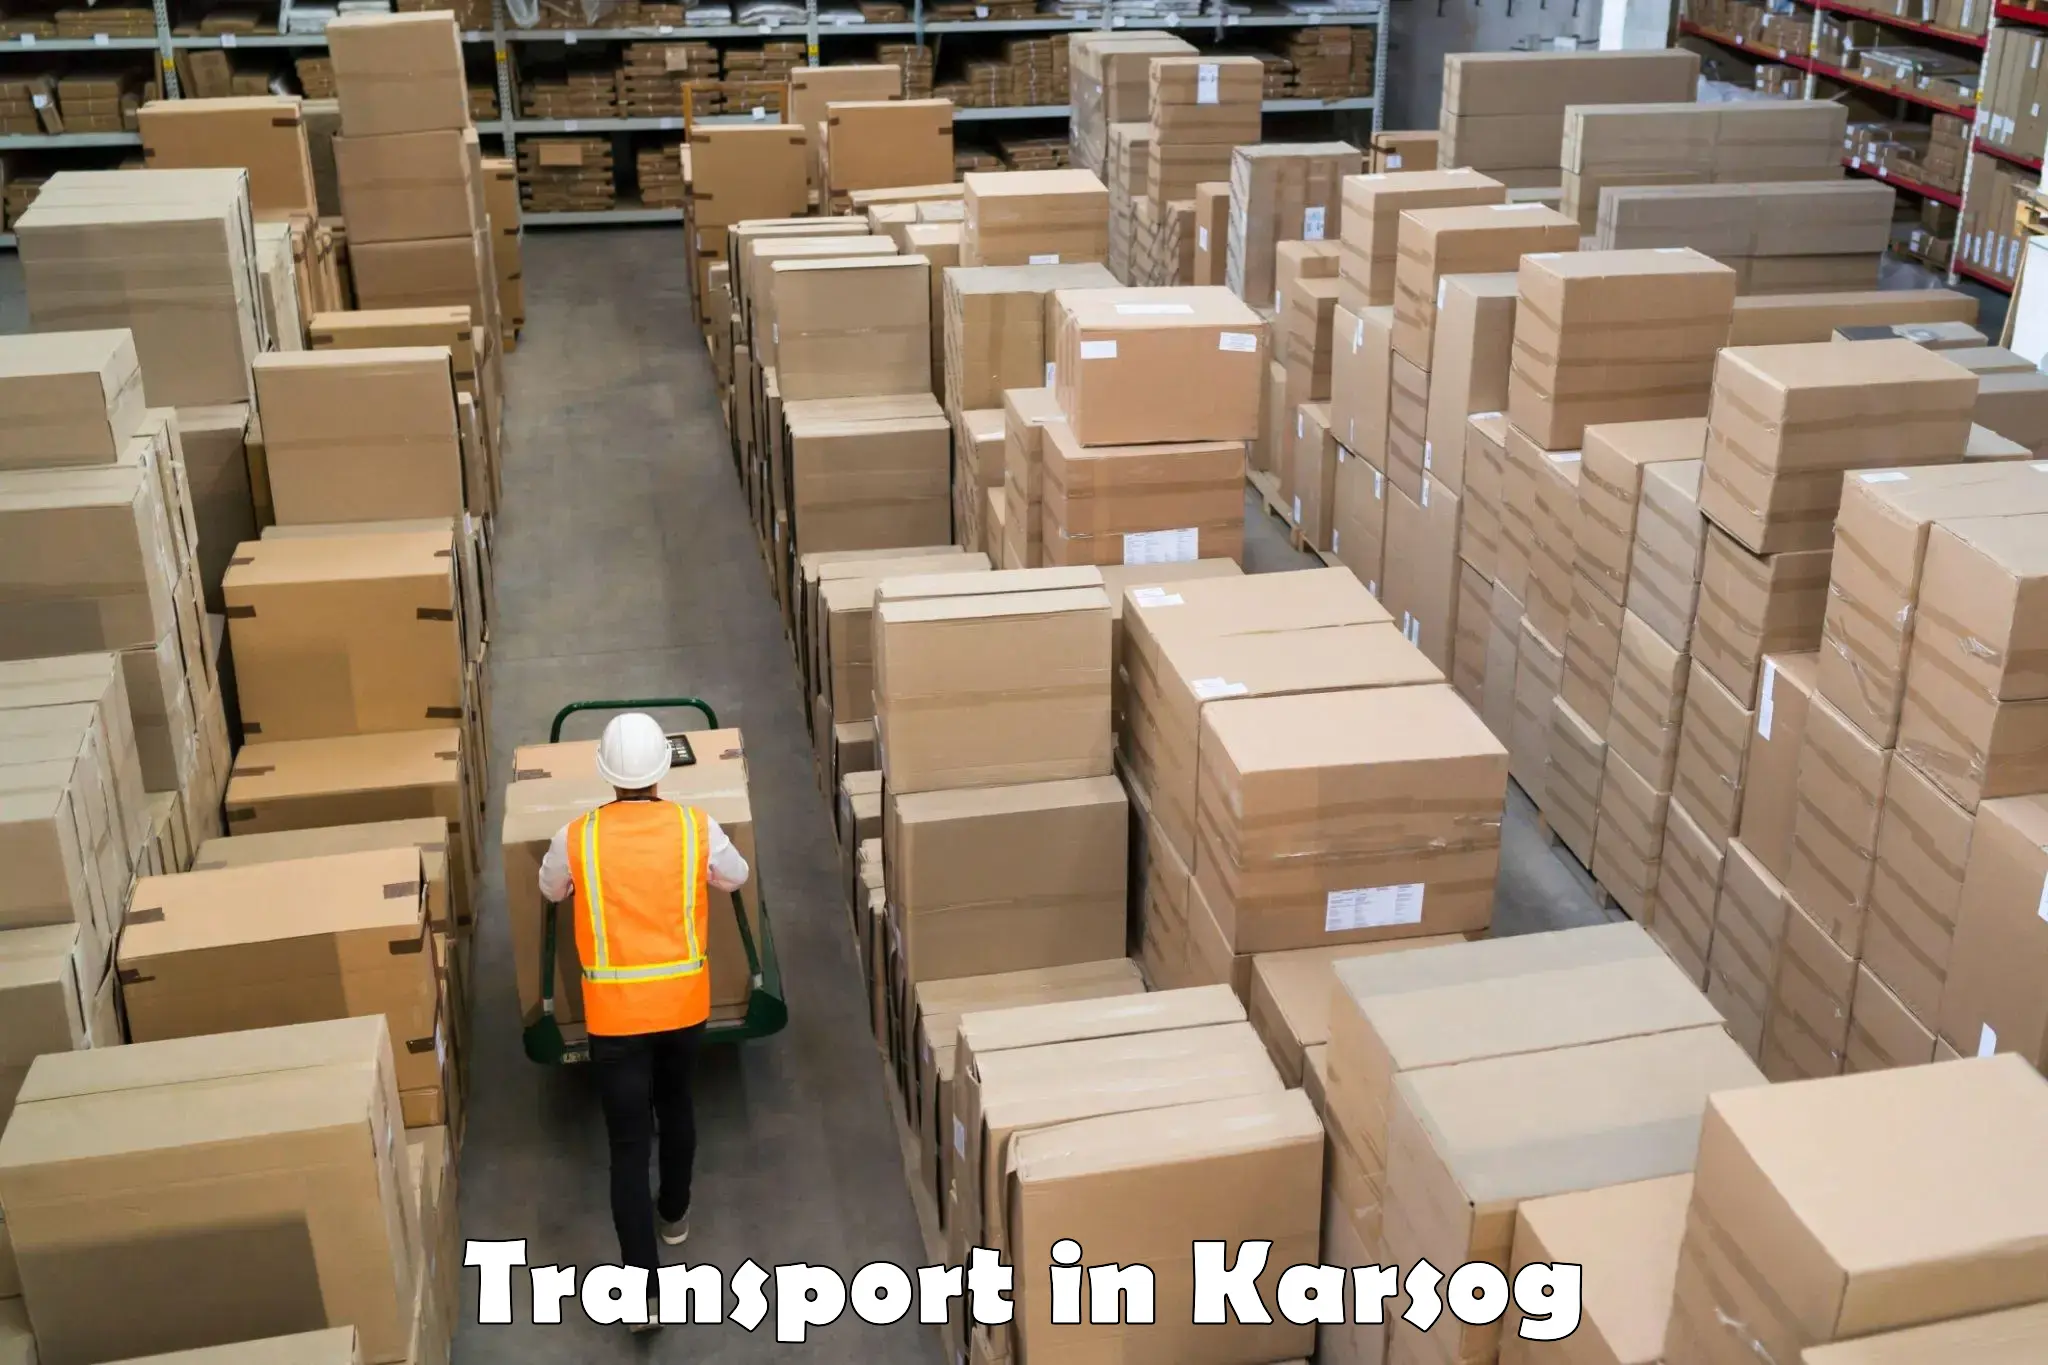 Daily parcel service transport in Karsog